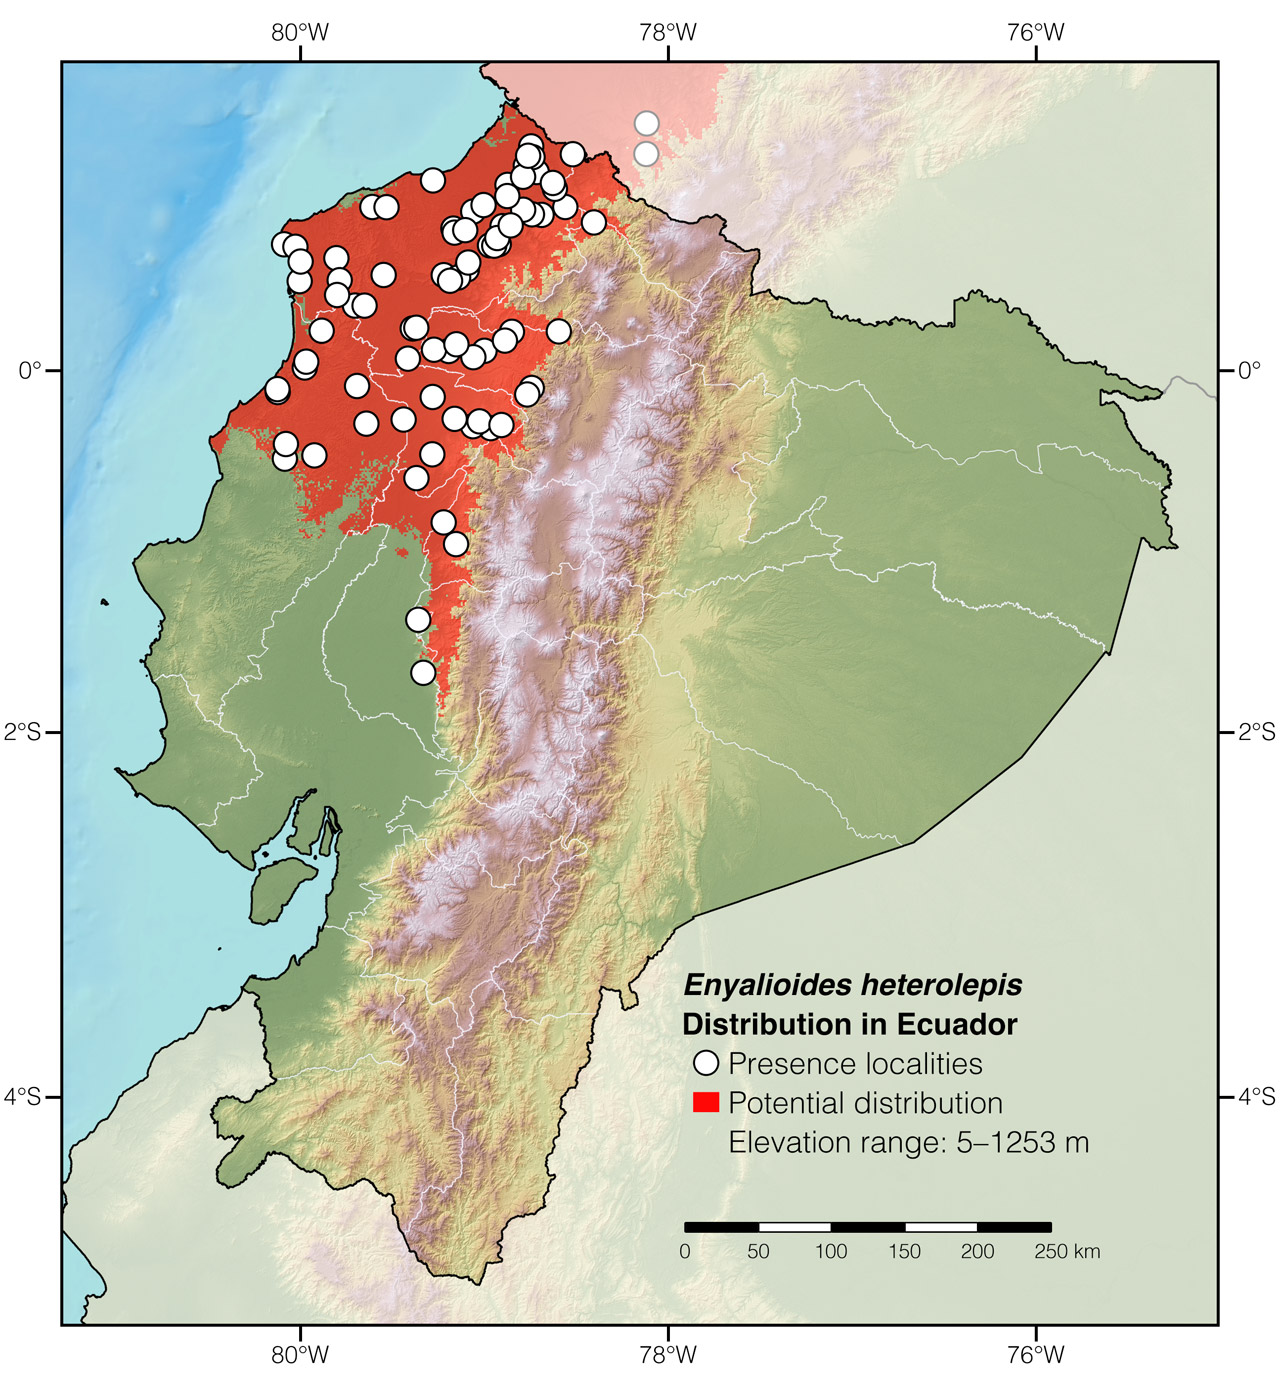 Distribution of Enyalioides heterolepis in Ecuador